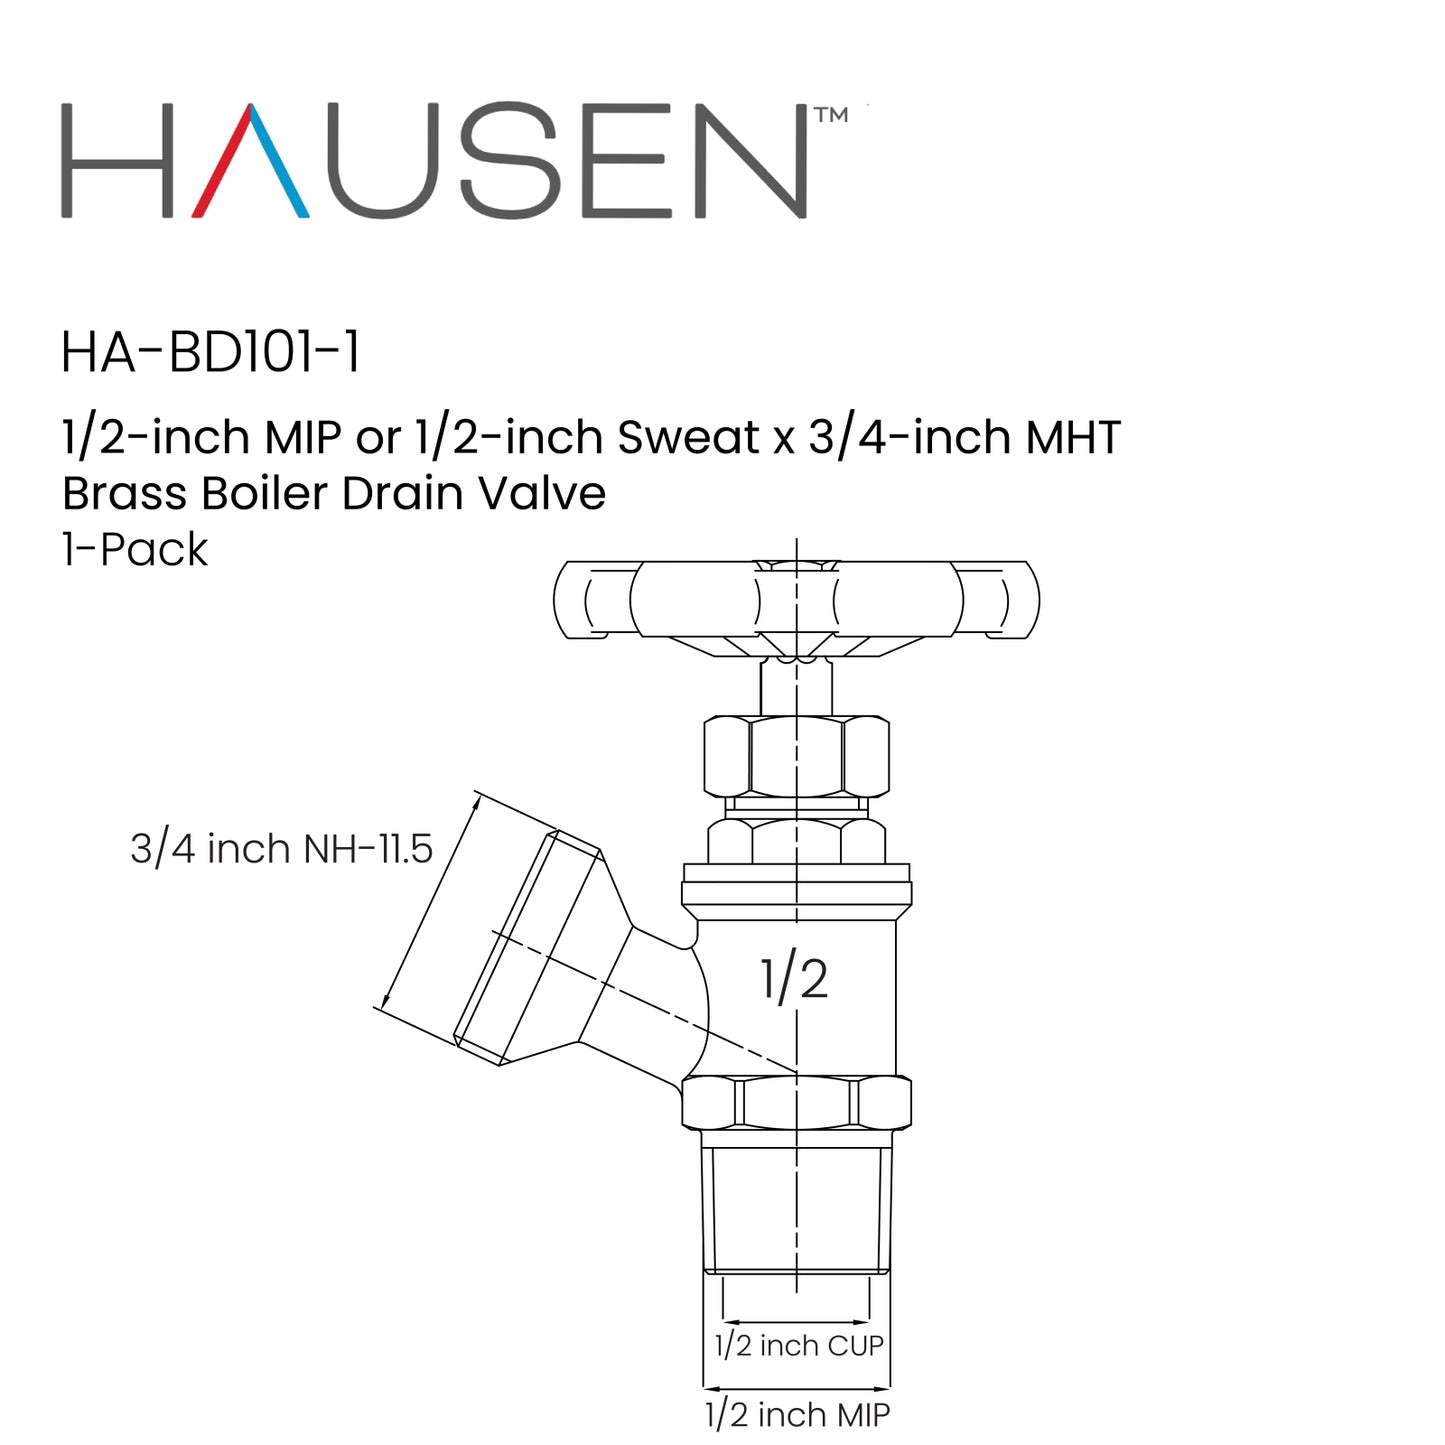 Hausen 1/2-inch MIP or 1/2-inch Sweat x 3/4-inch MHT Brass Boiler Drain Valve, 1-Pack